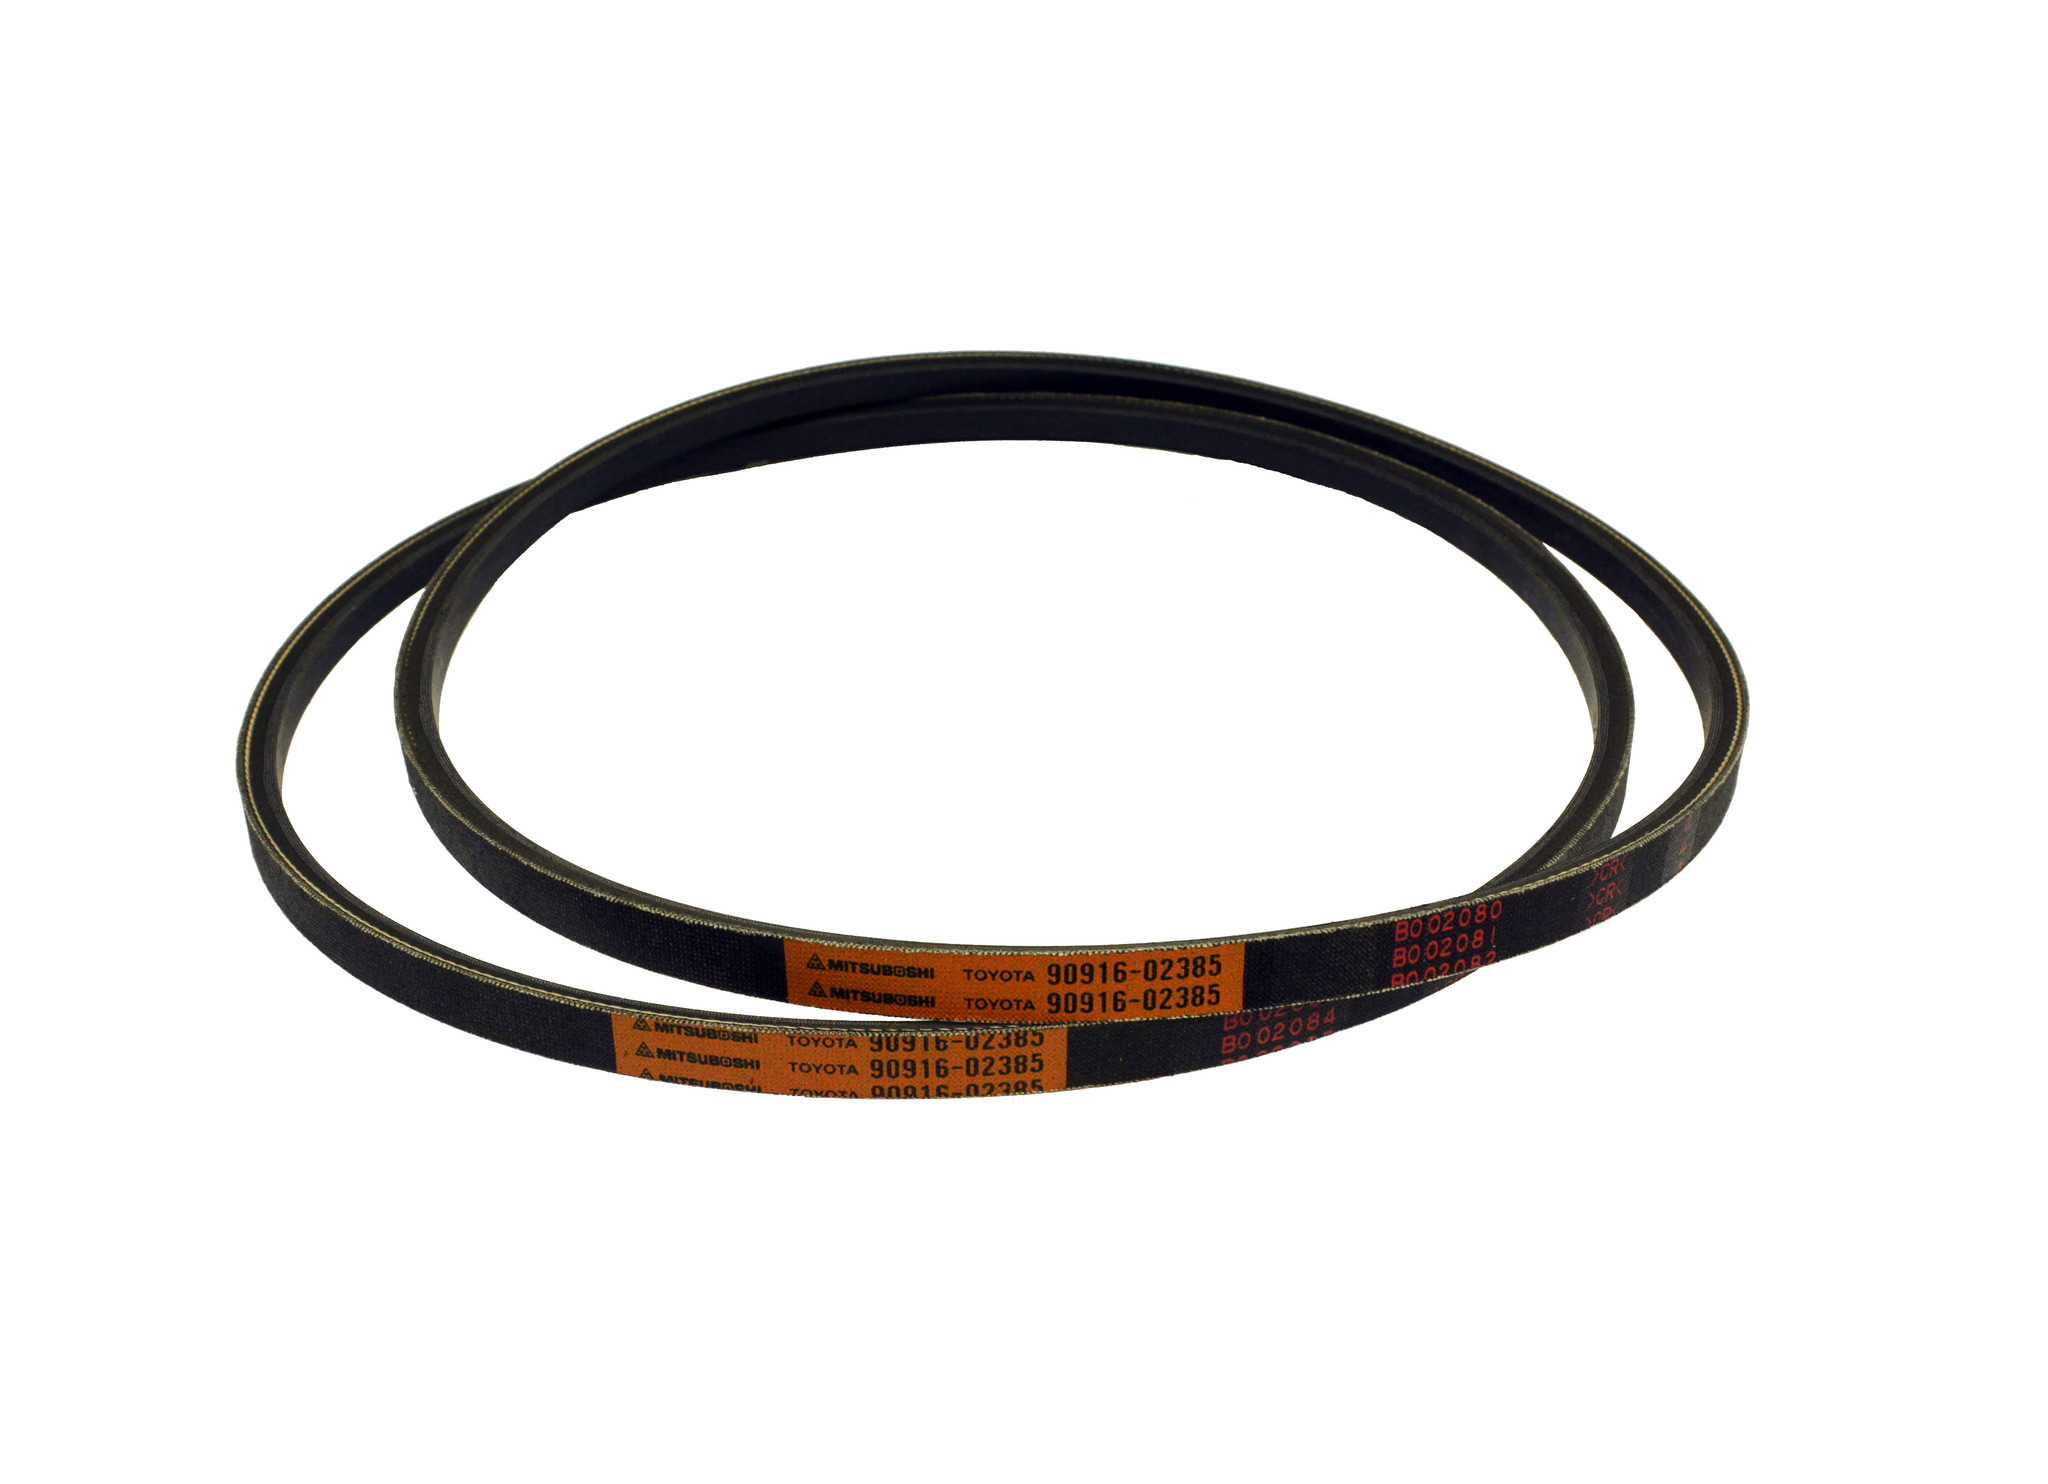 Belts, Fan & Alternator - 1KZTE - 90916-02385 (2 belt set)